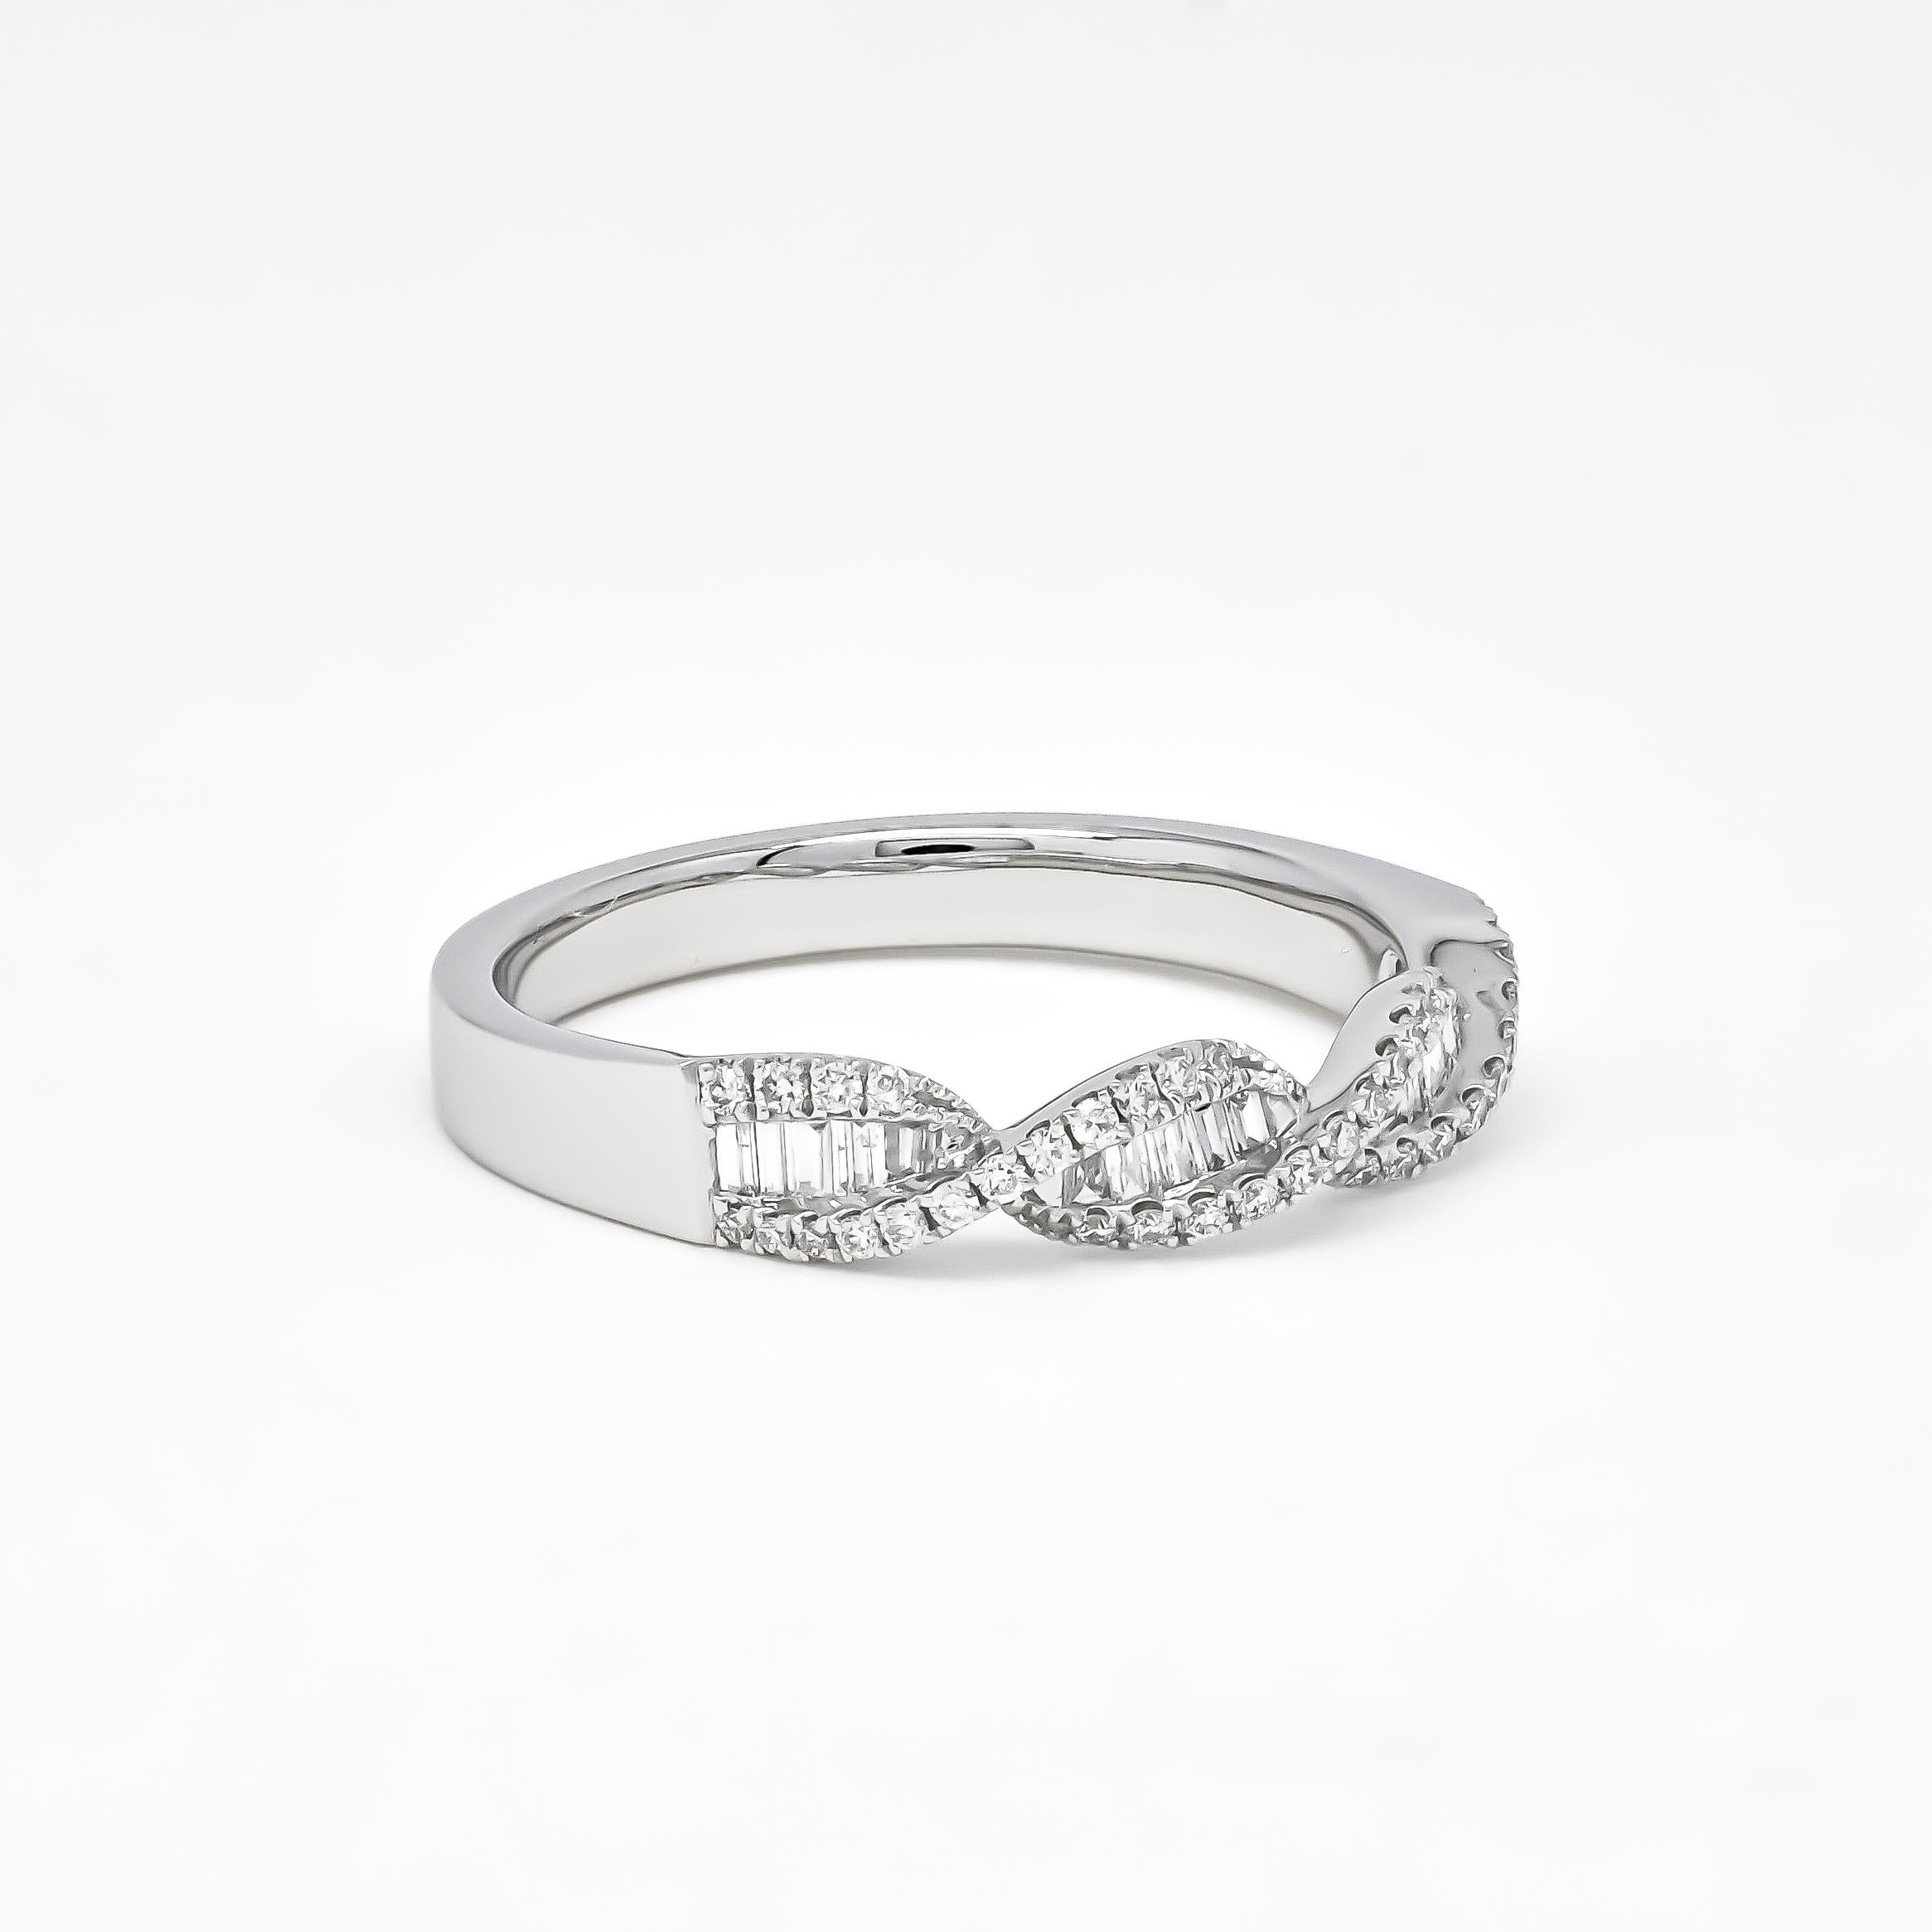 Créez un impact avec notre anneau dynamique DNA Felix, incrusté d'étincelants diamants naturels baguettes et ronds.

Les diamants sont sertis dans de l'or rose, de l'or jaune ou de l'or blanc 18 carats DNA Felix poli à un lustre